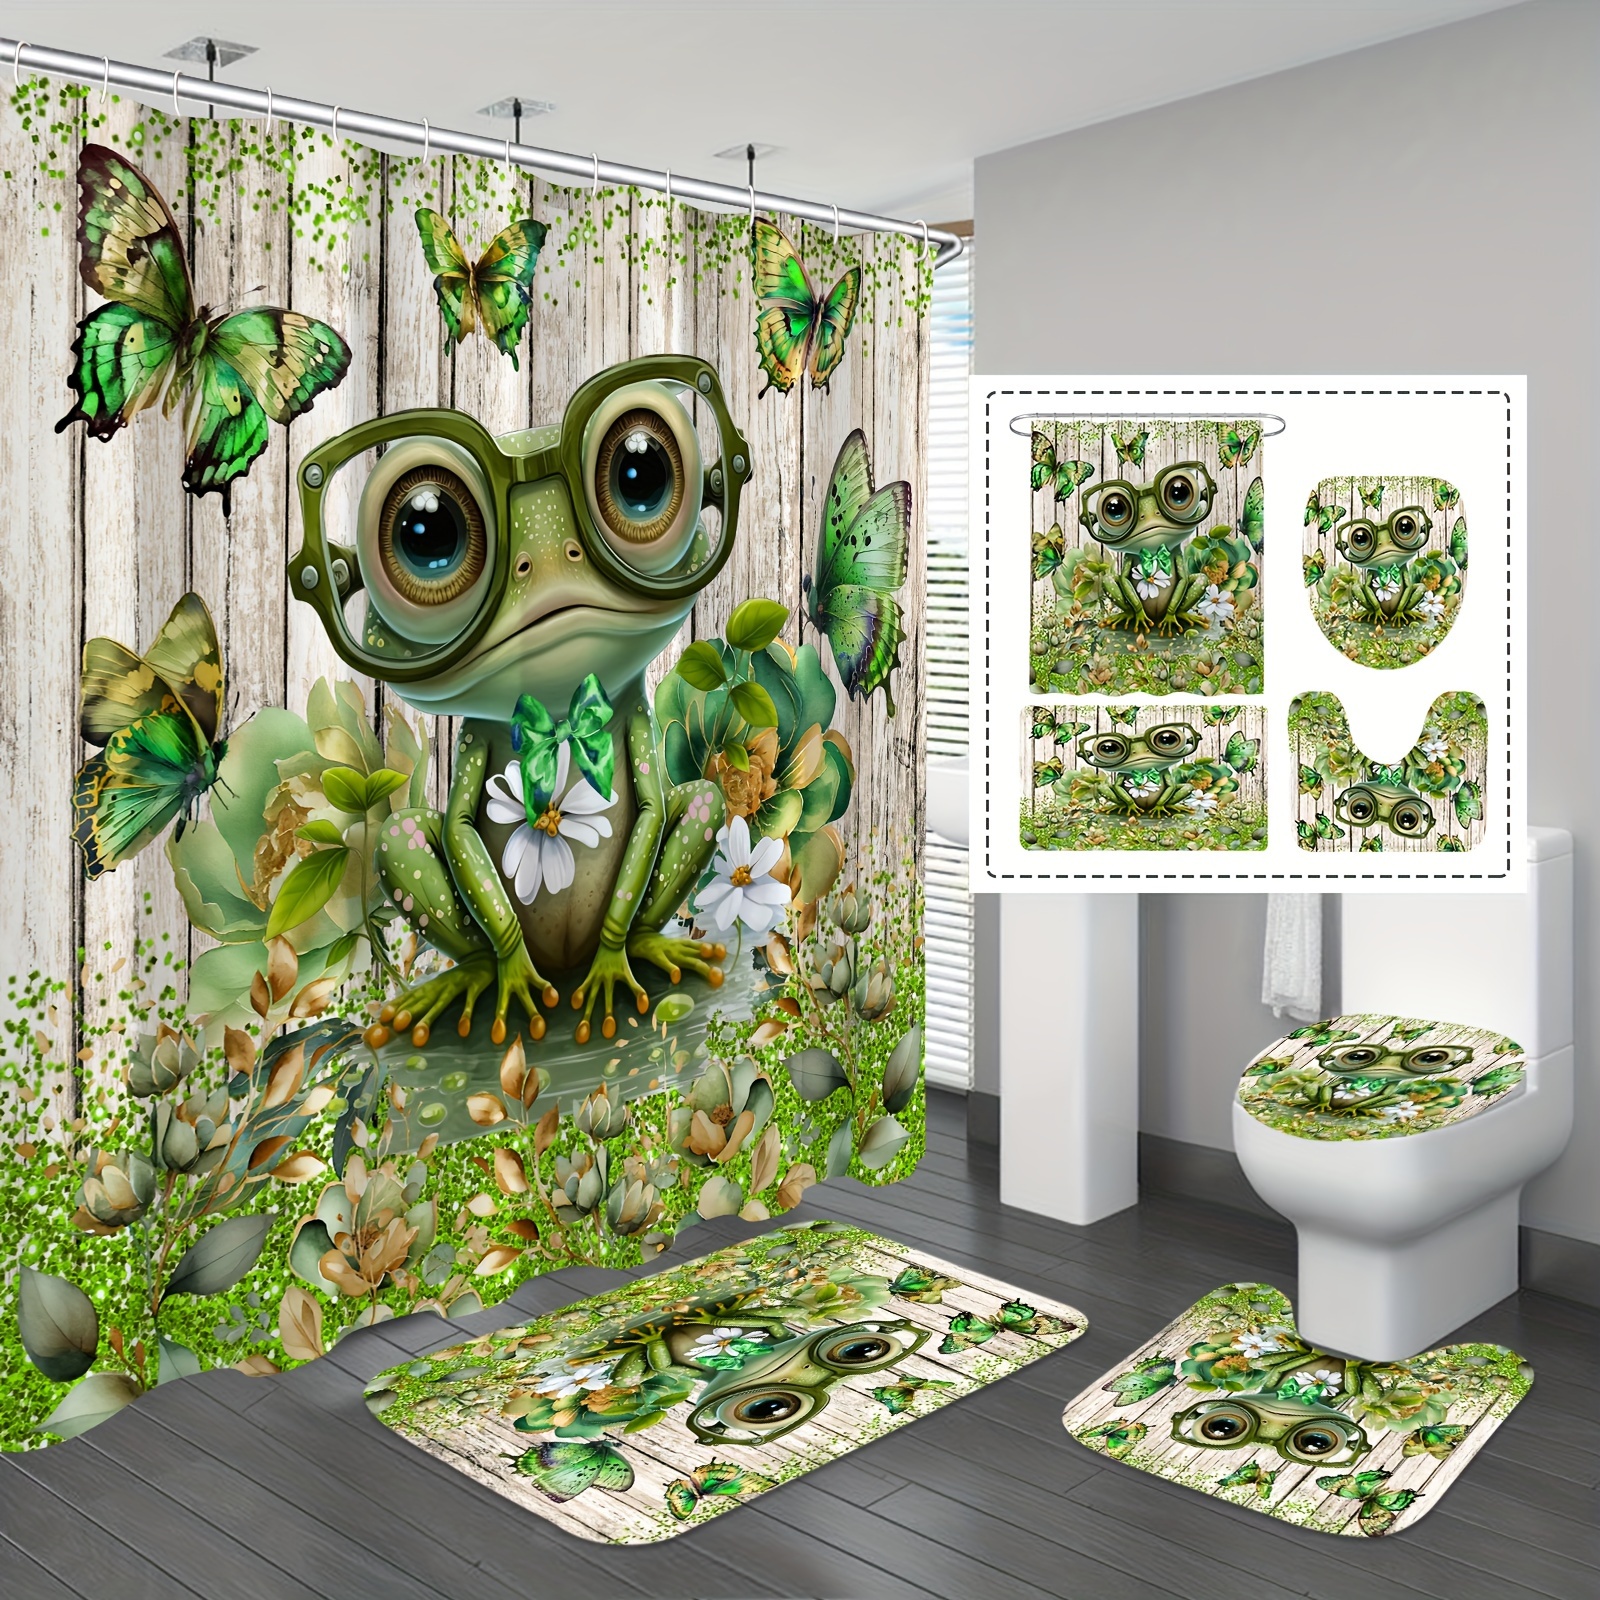 Feelyou Frog Shower Curtain Tropical Amphibian Bath Curtain with 12 Hooks  Tropical Rain Nature 3D Animal Theme Bathroom Decor Shower Curtain Set for